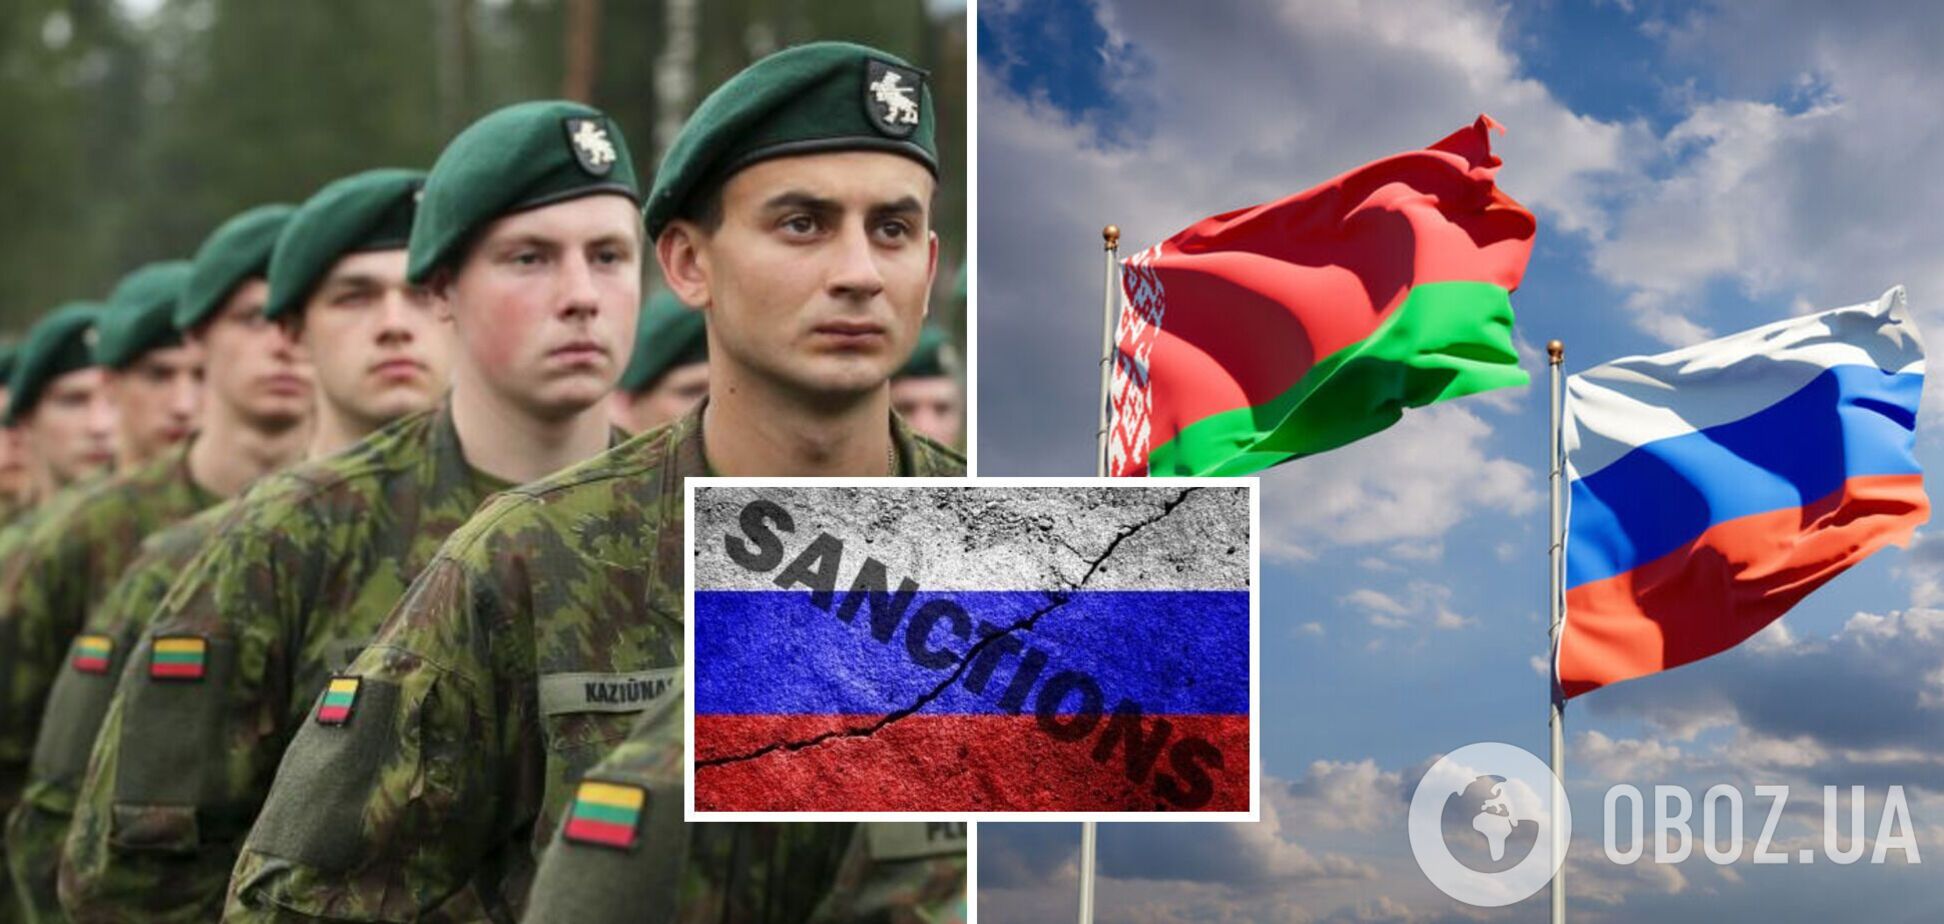 Армии Латвии поставляли продукты из РФ и Беларуси: детали расследования